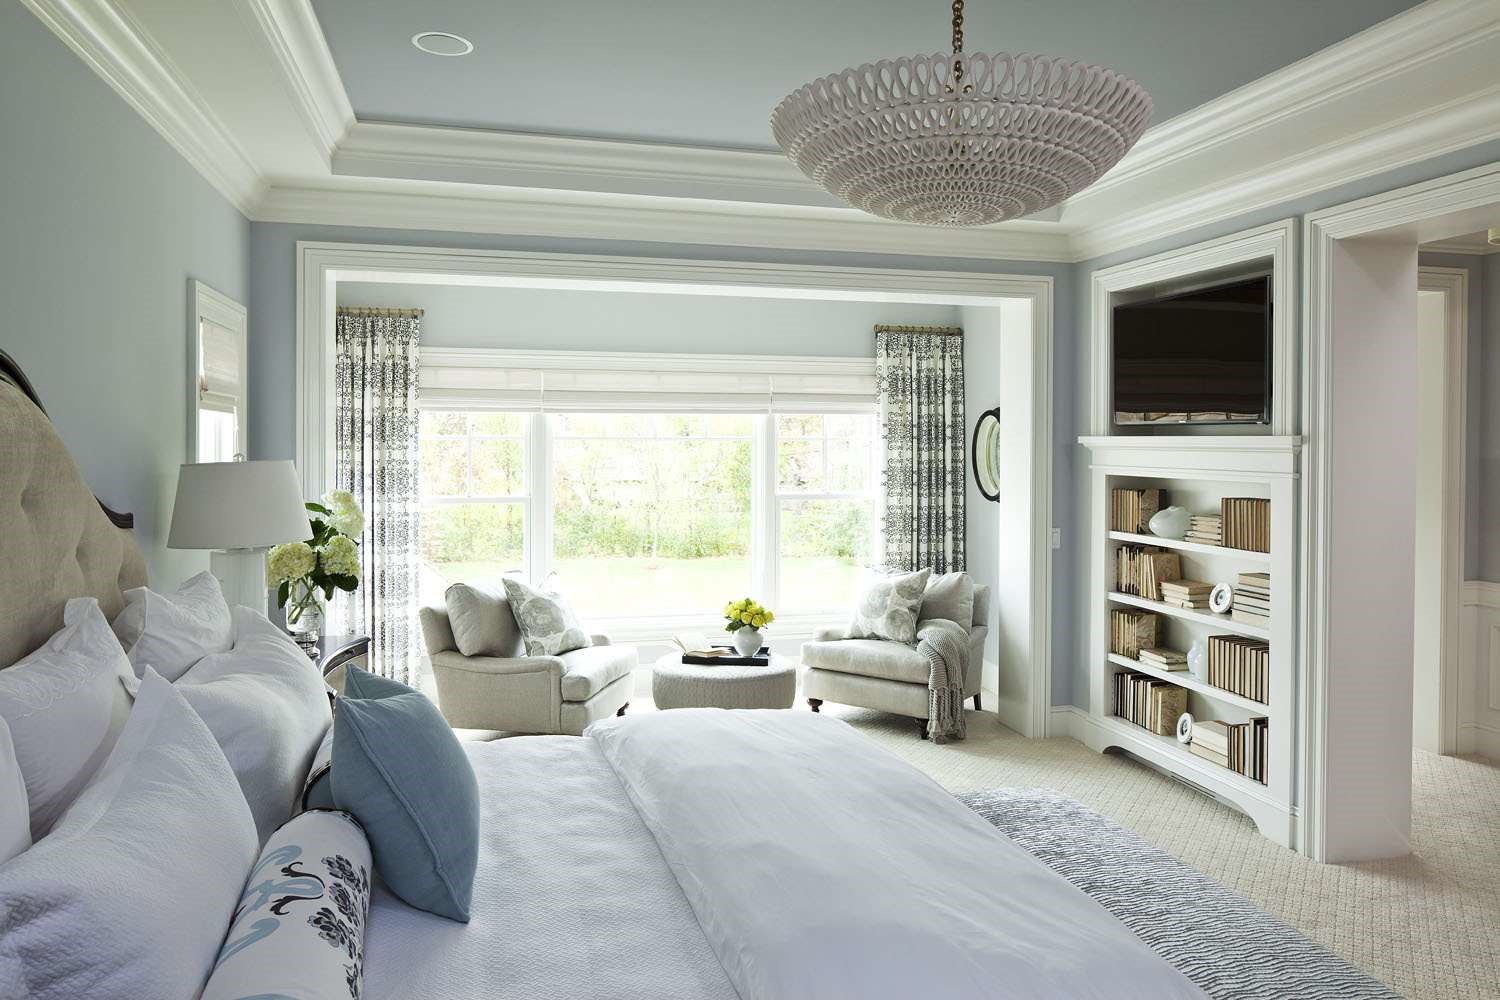 طراحی اتاق خواب مستر به شیوه اصولی با استفاده از مبلمان مناسب